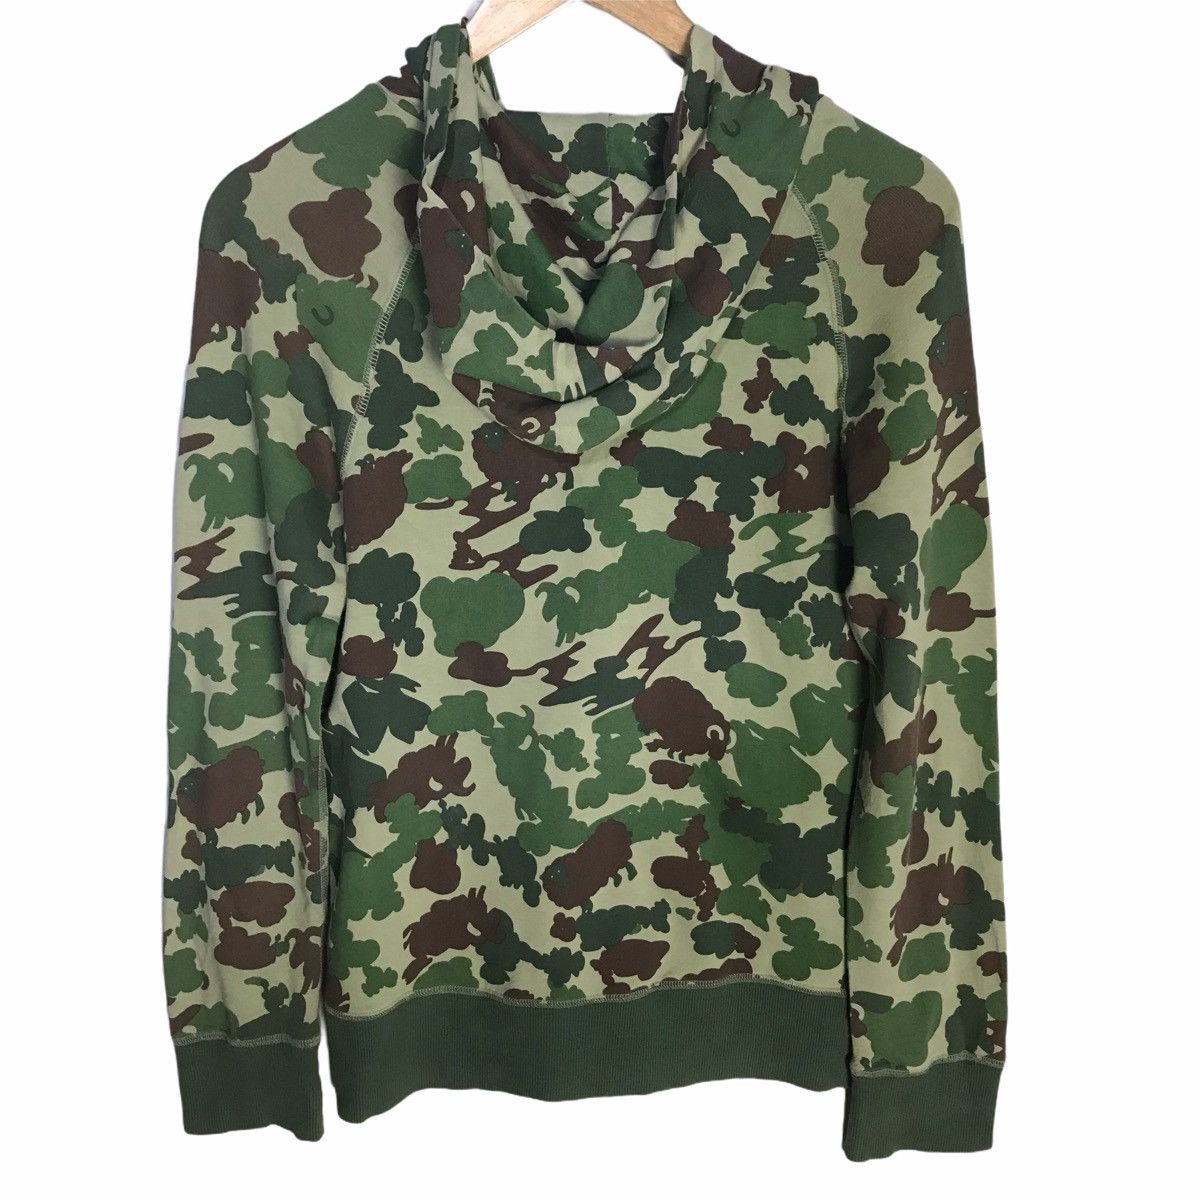 Beamsboy sheep camouflage patern zip up hoodie - 2